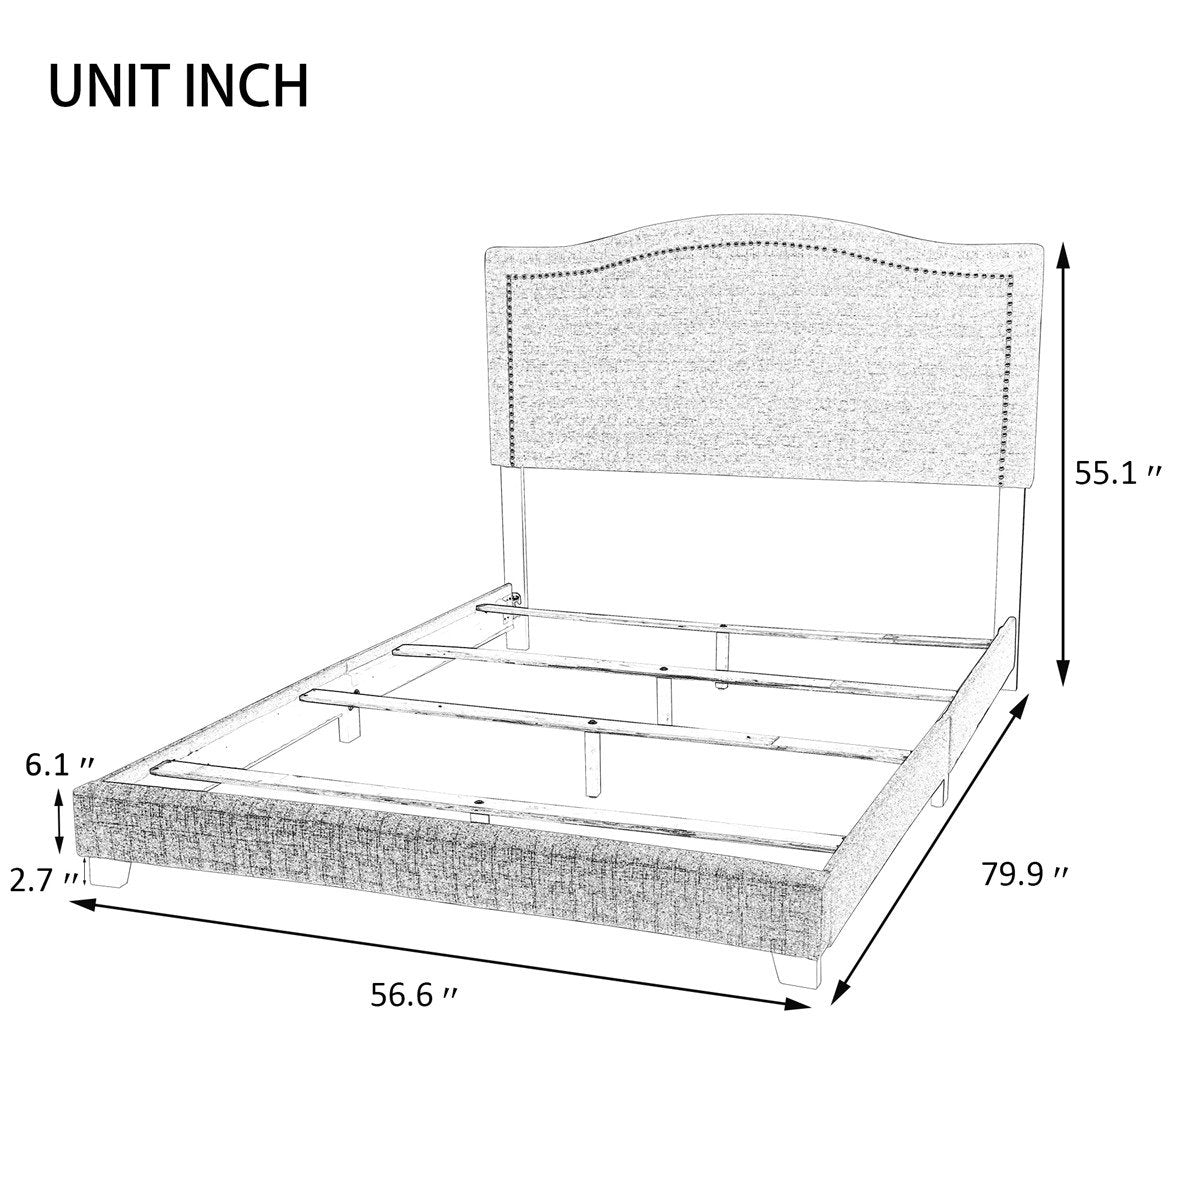 Upholstered Standard Bed